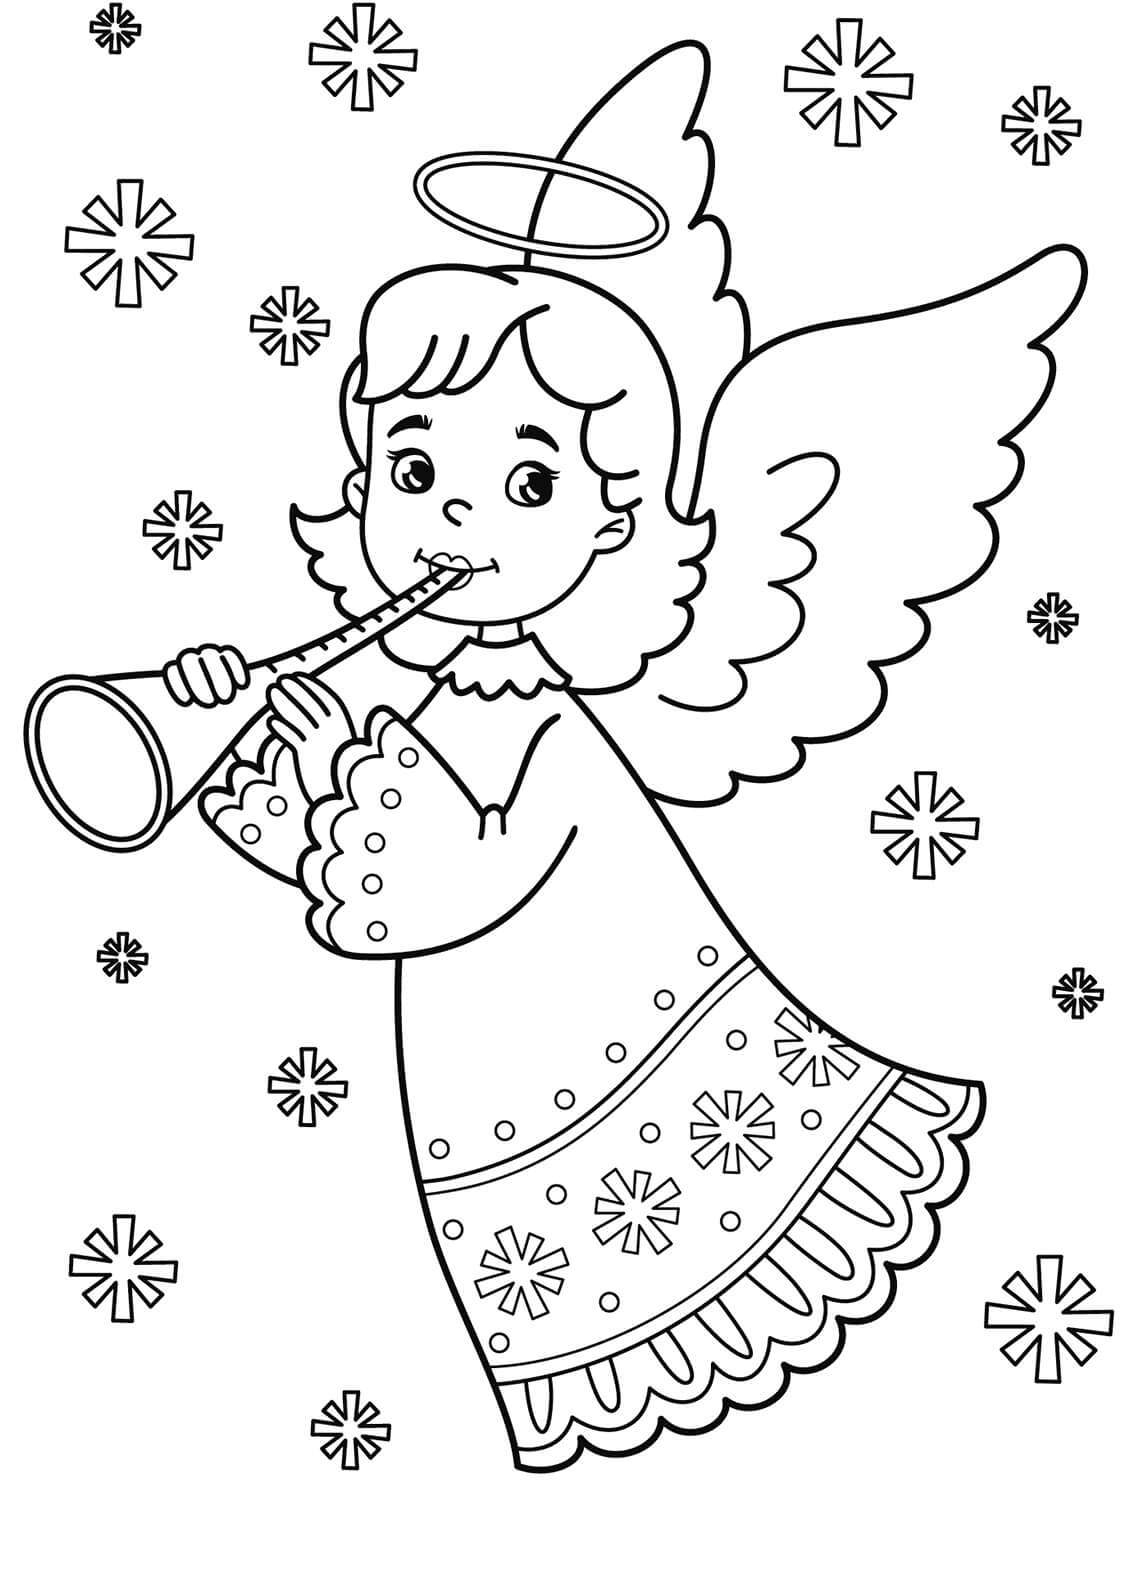 Ange Joue de La Trompette coloring page